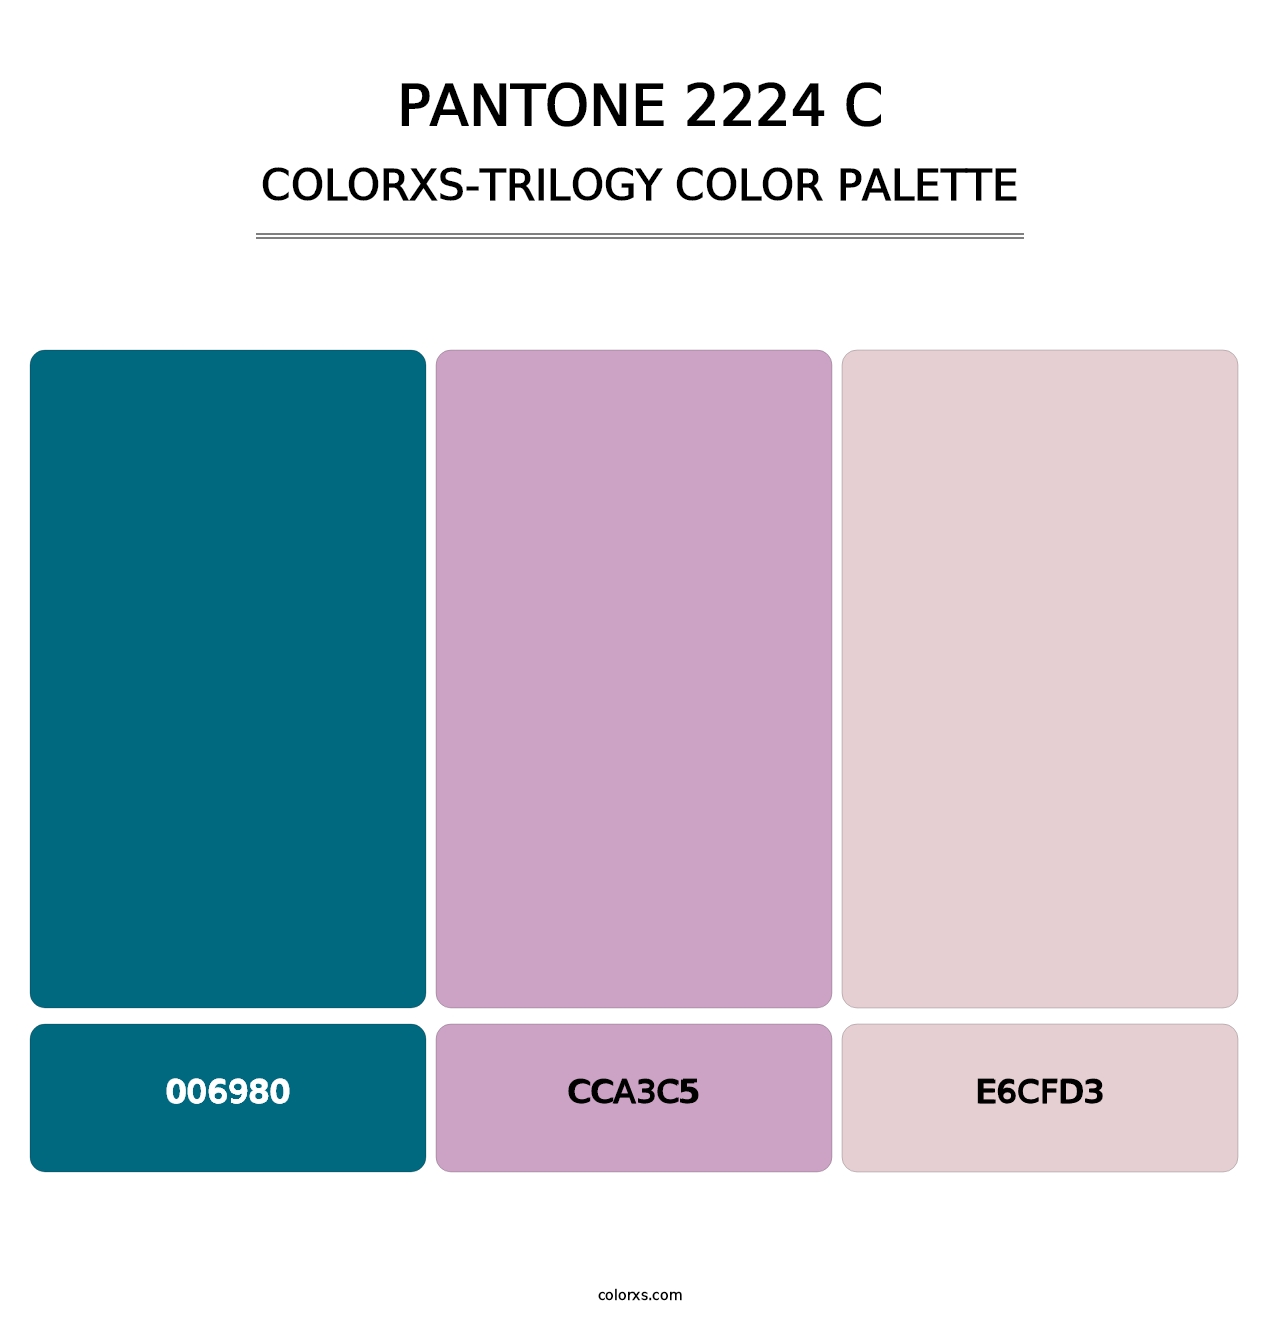 PANTONE 2224 C - Colorxs Trilogy Palette